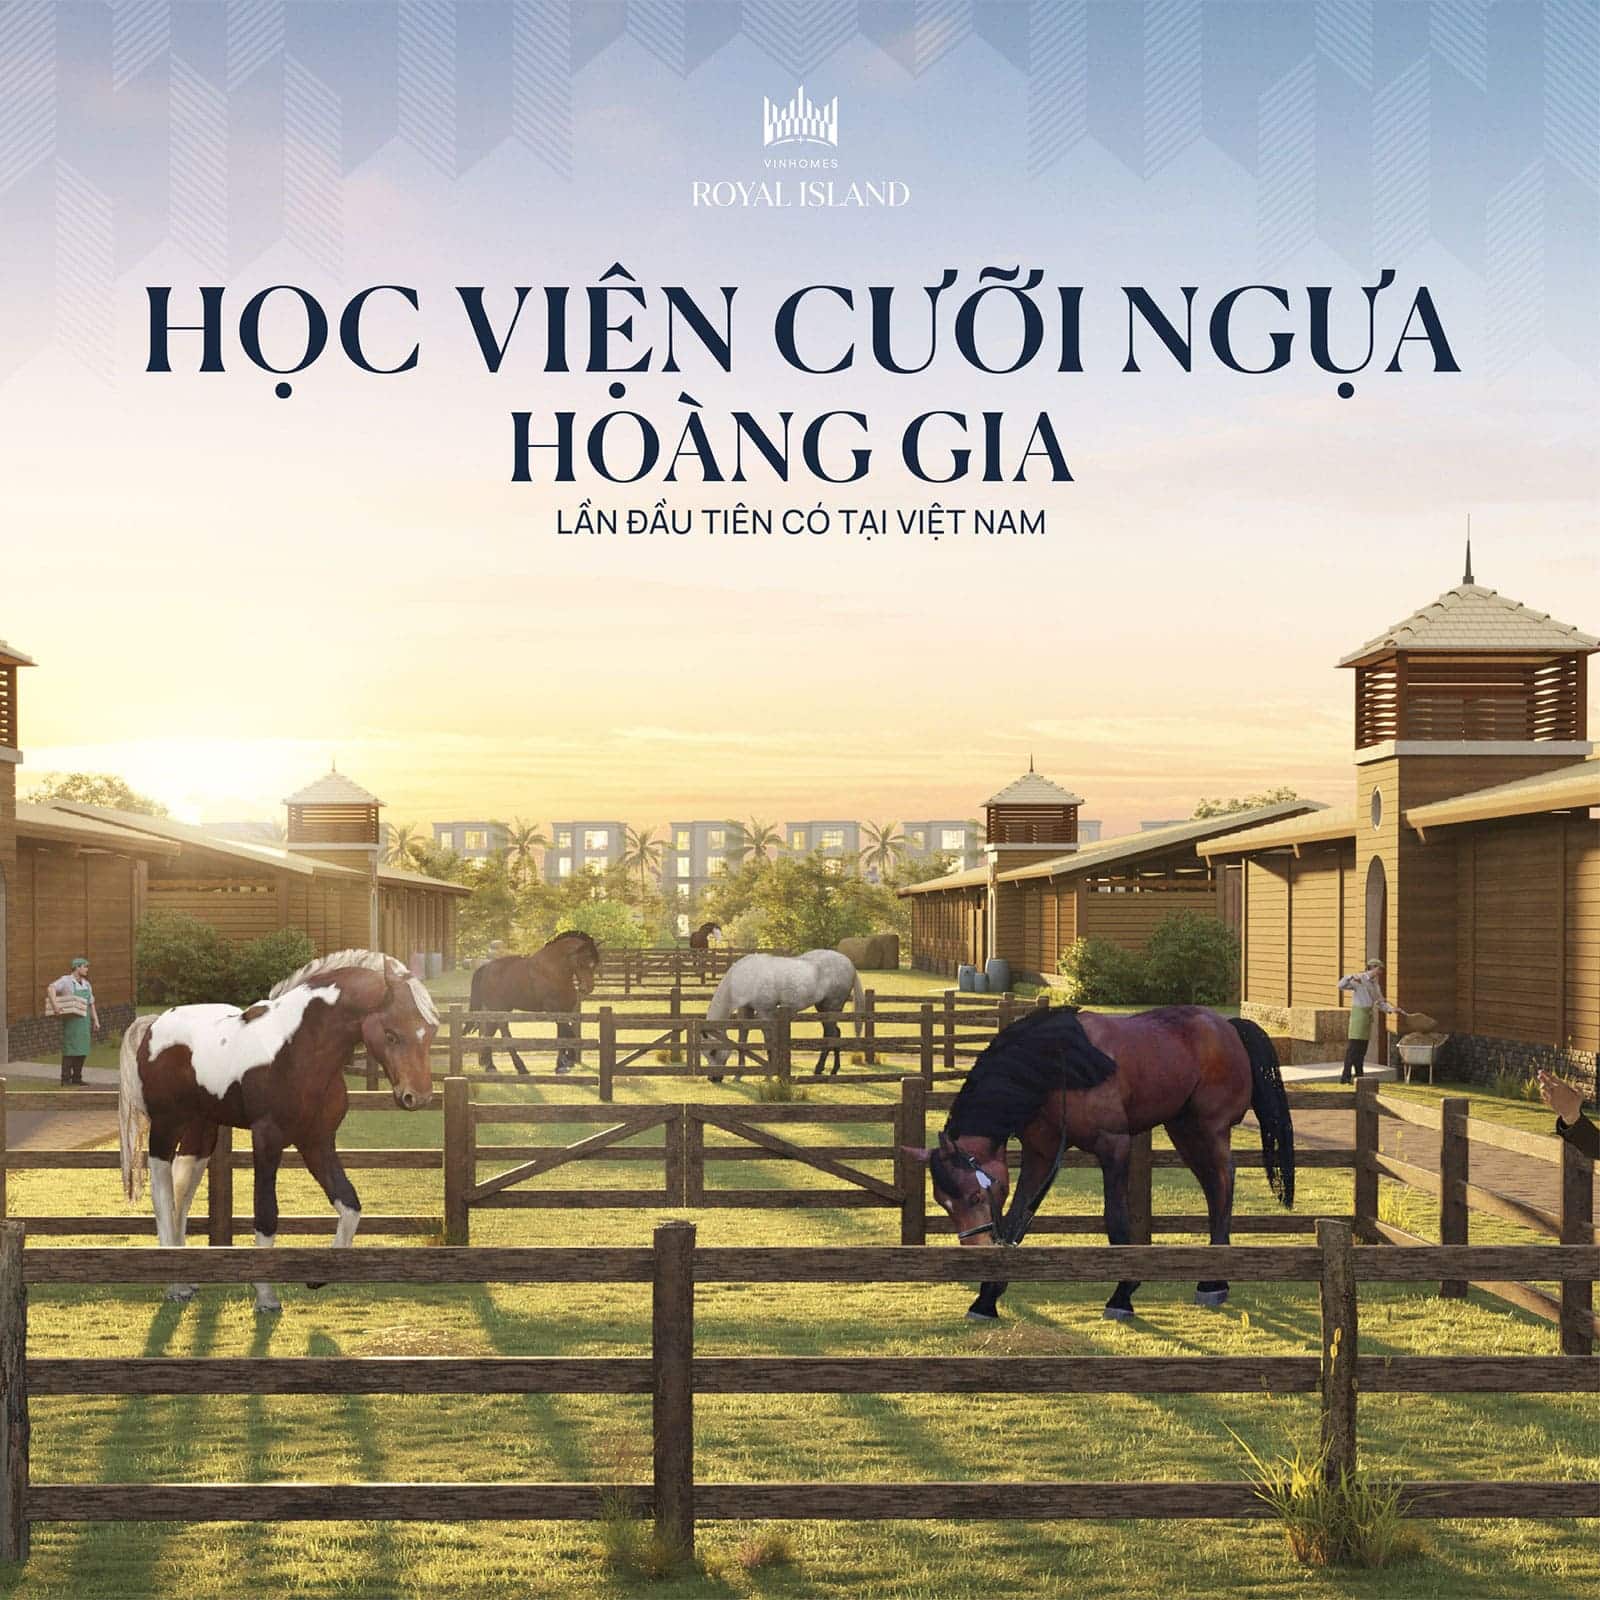 Tiện ích Học viện cưỡi ngựa Hoàng Gia lần đầu tiên có tại Việt Nam tại Vinhomes Royal Island.